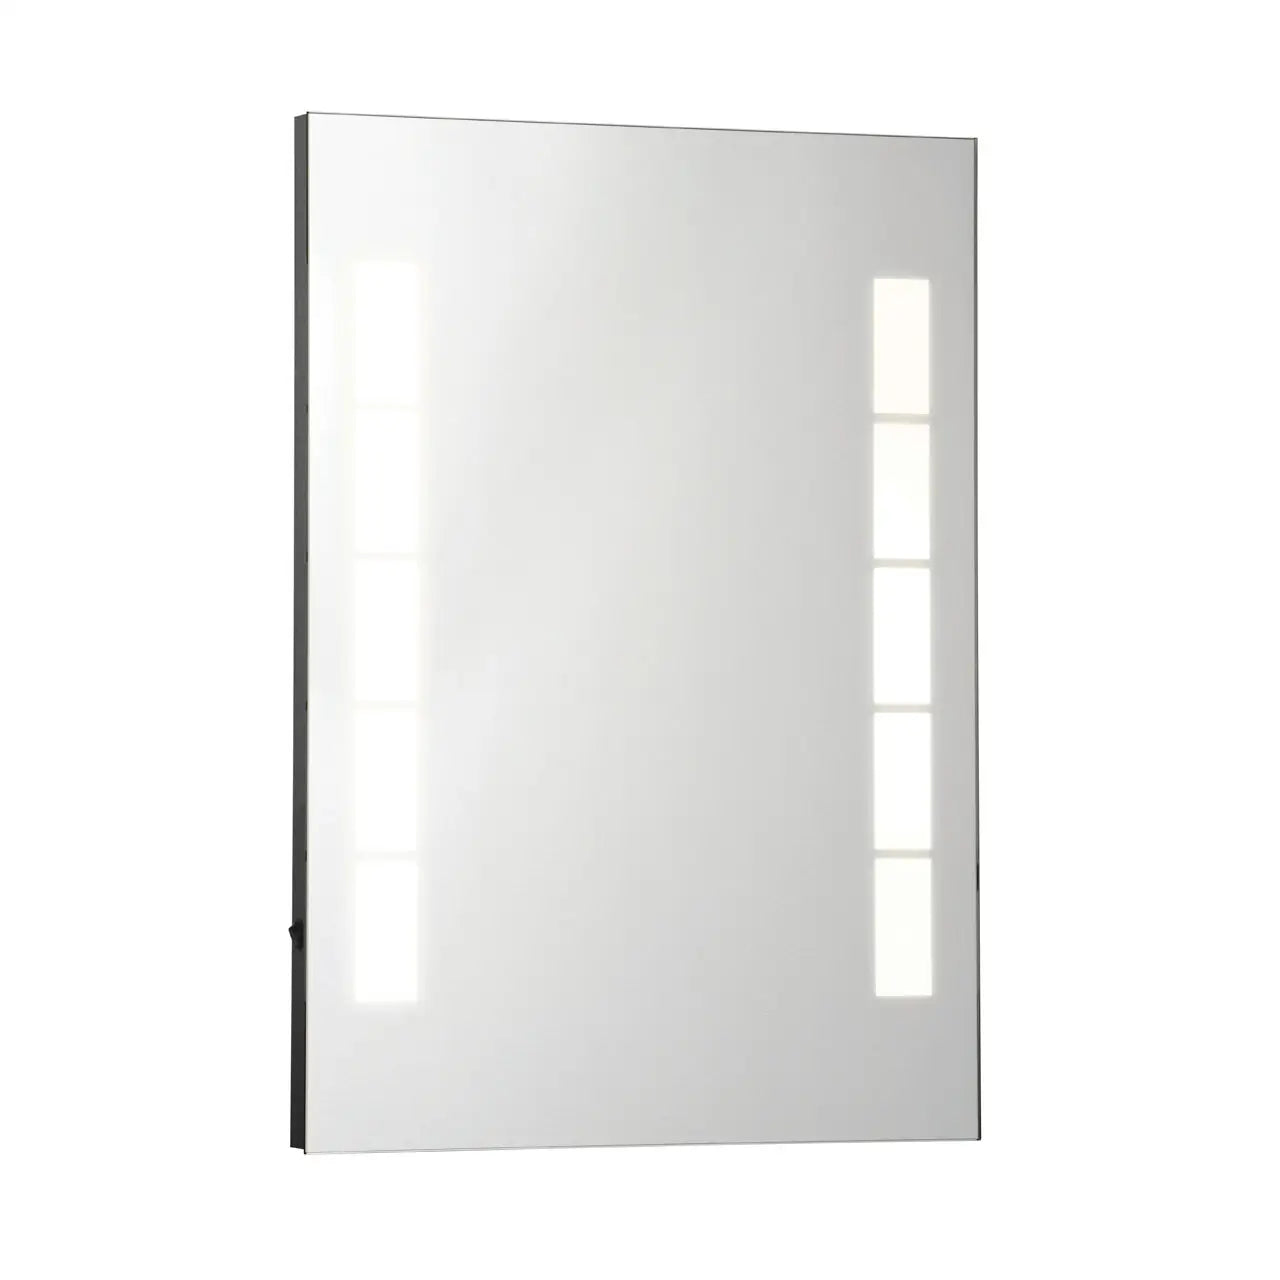 Malana Illuminated Small Wall Mirror